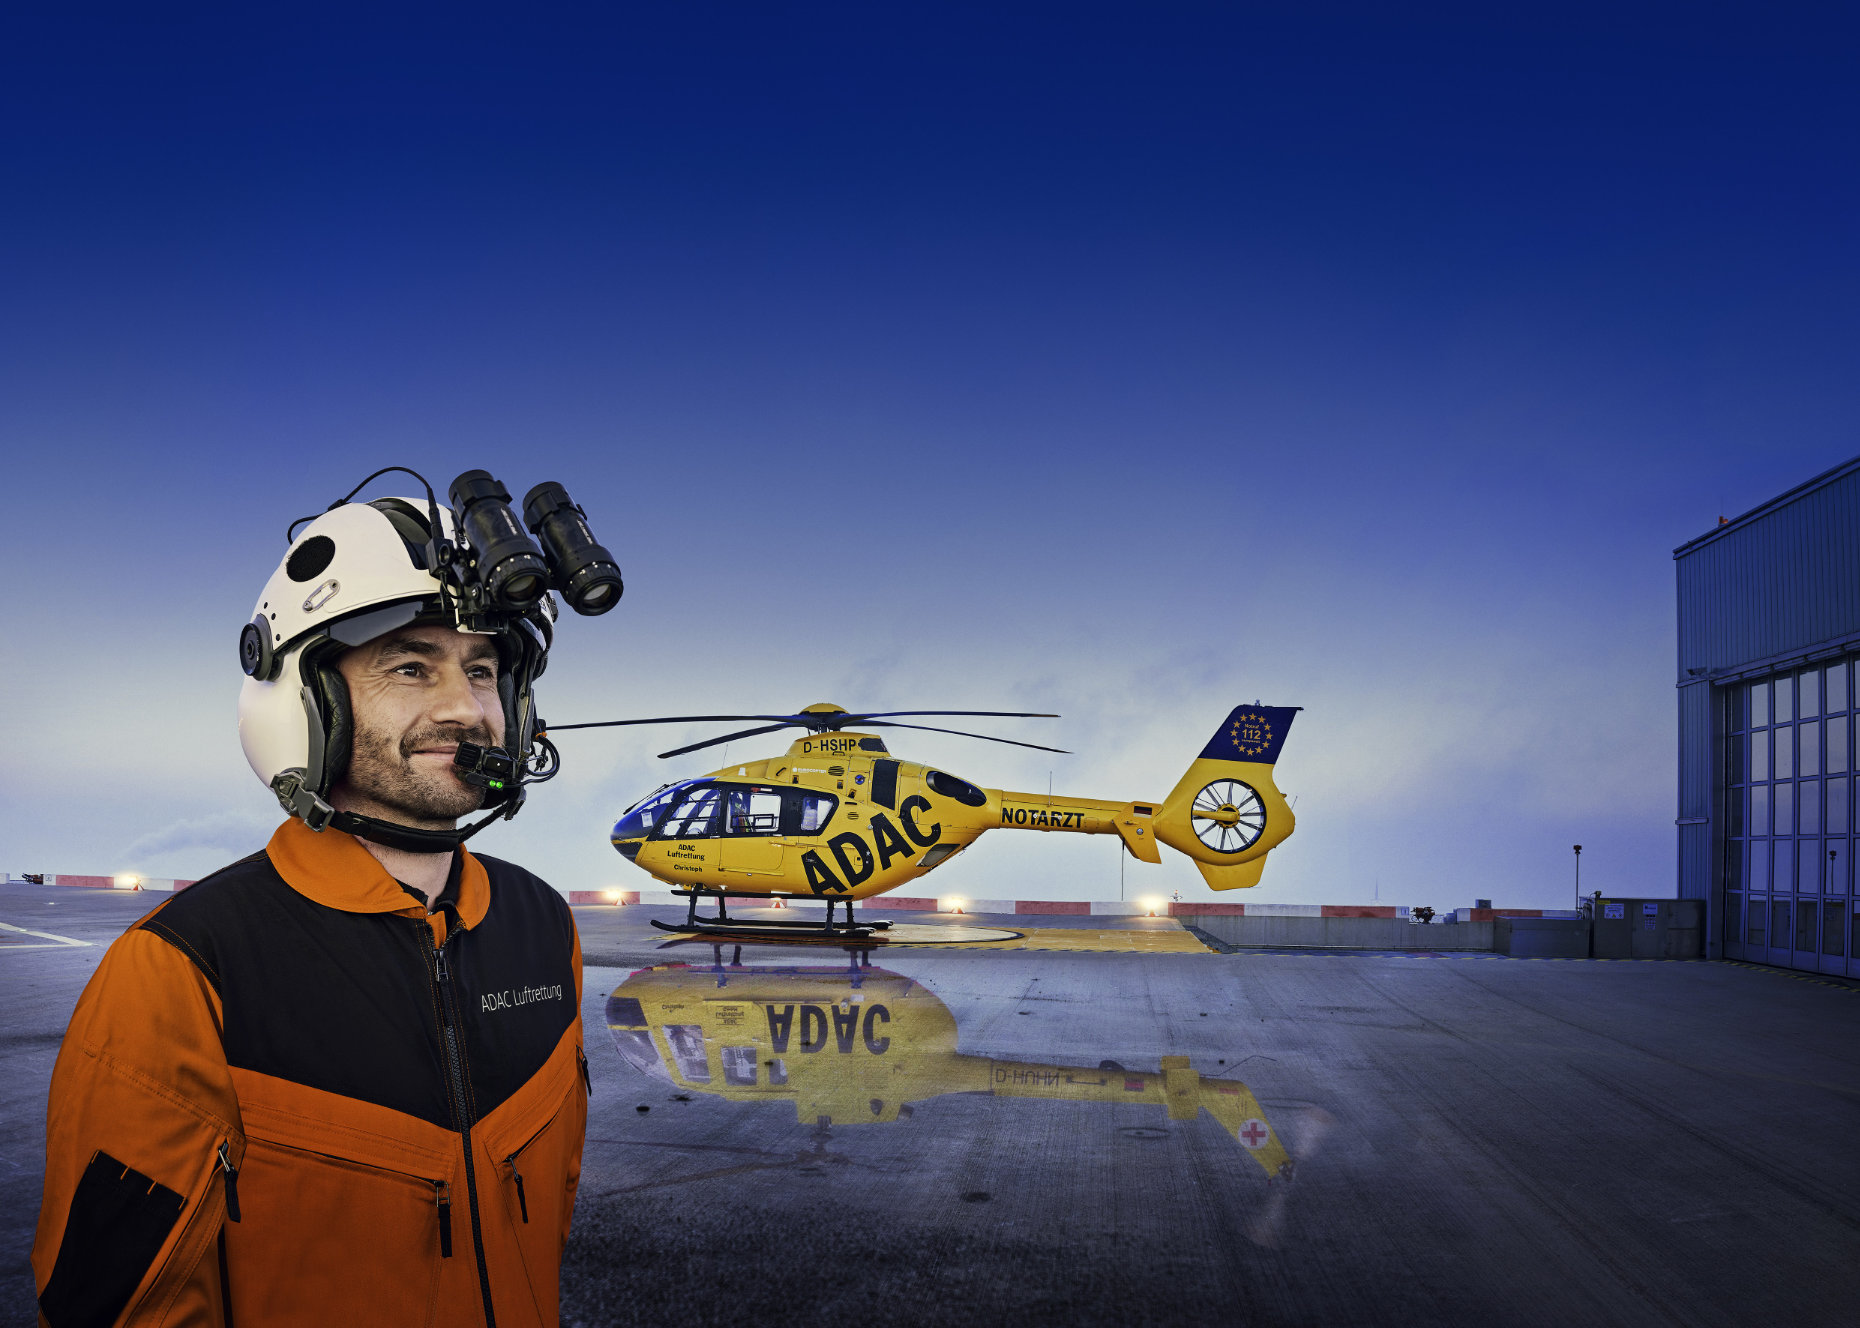 Ein männlicher Helikopter Pilot mit Nachtsichtgeräte auf dem Helm steht vor einem Hubschrauber der ADAC Luftrettung auf dem Dach des Augsburger Krankenhaus